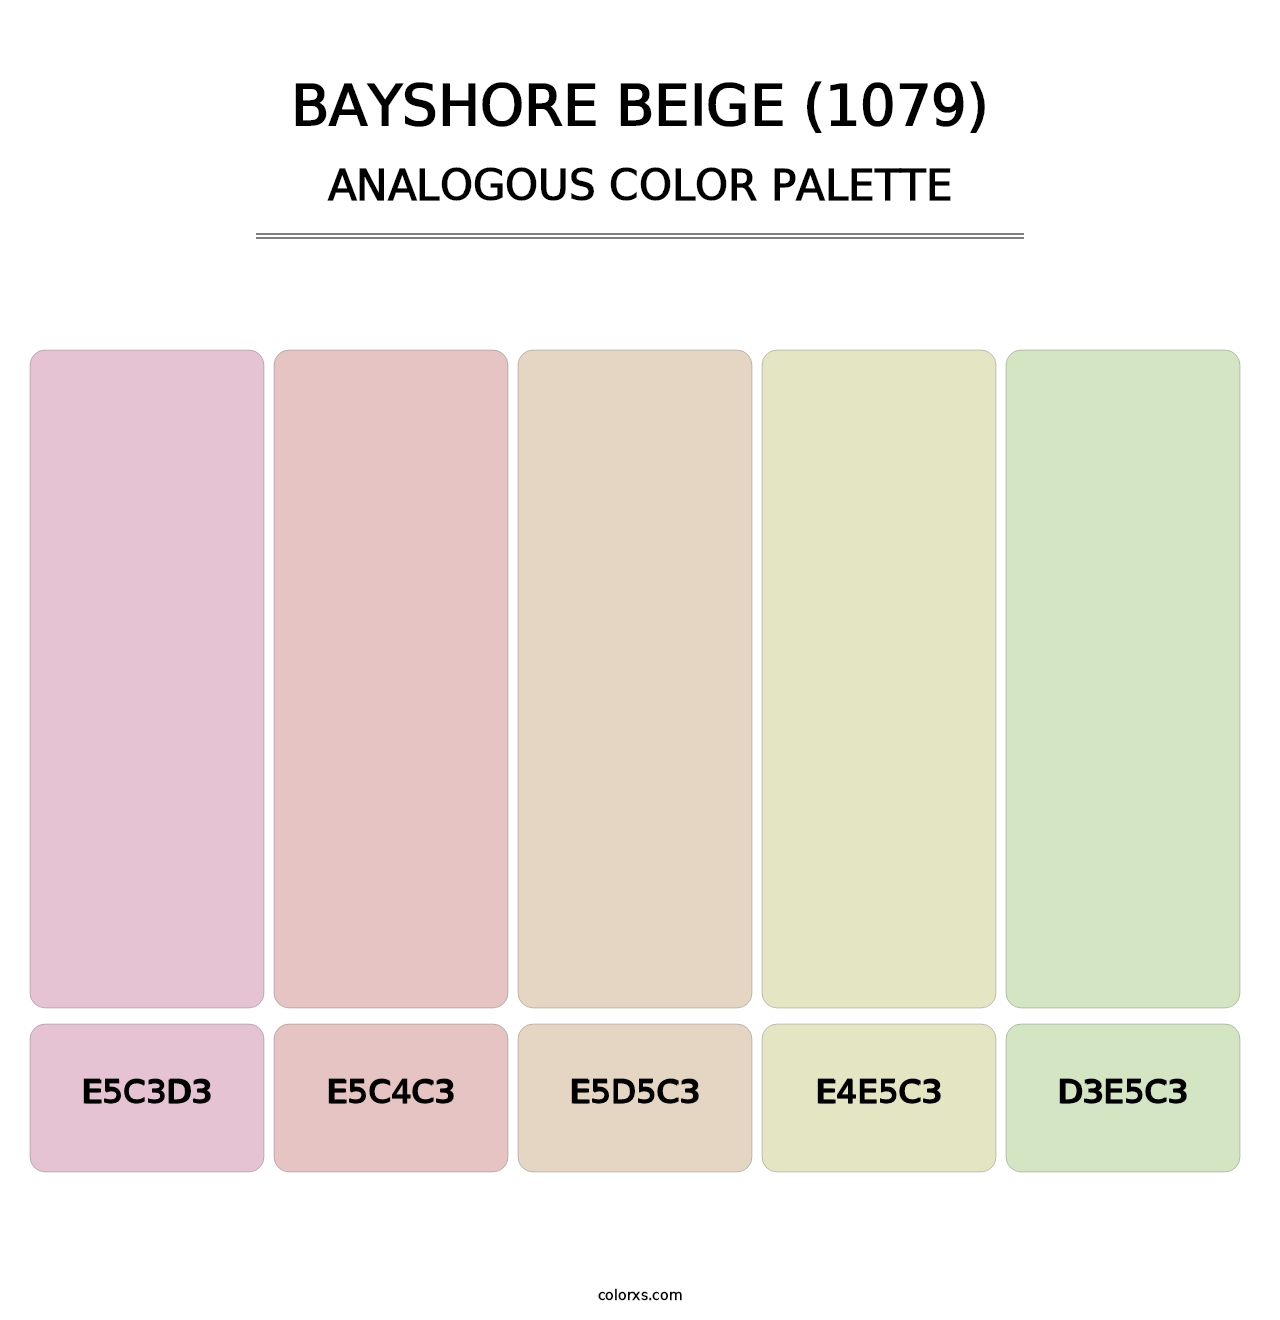 Bayshore Beige (1079) - Analogous Color Palette